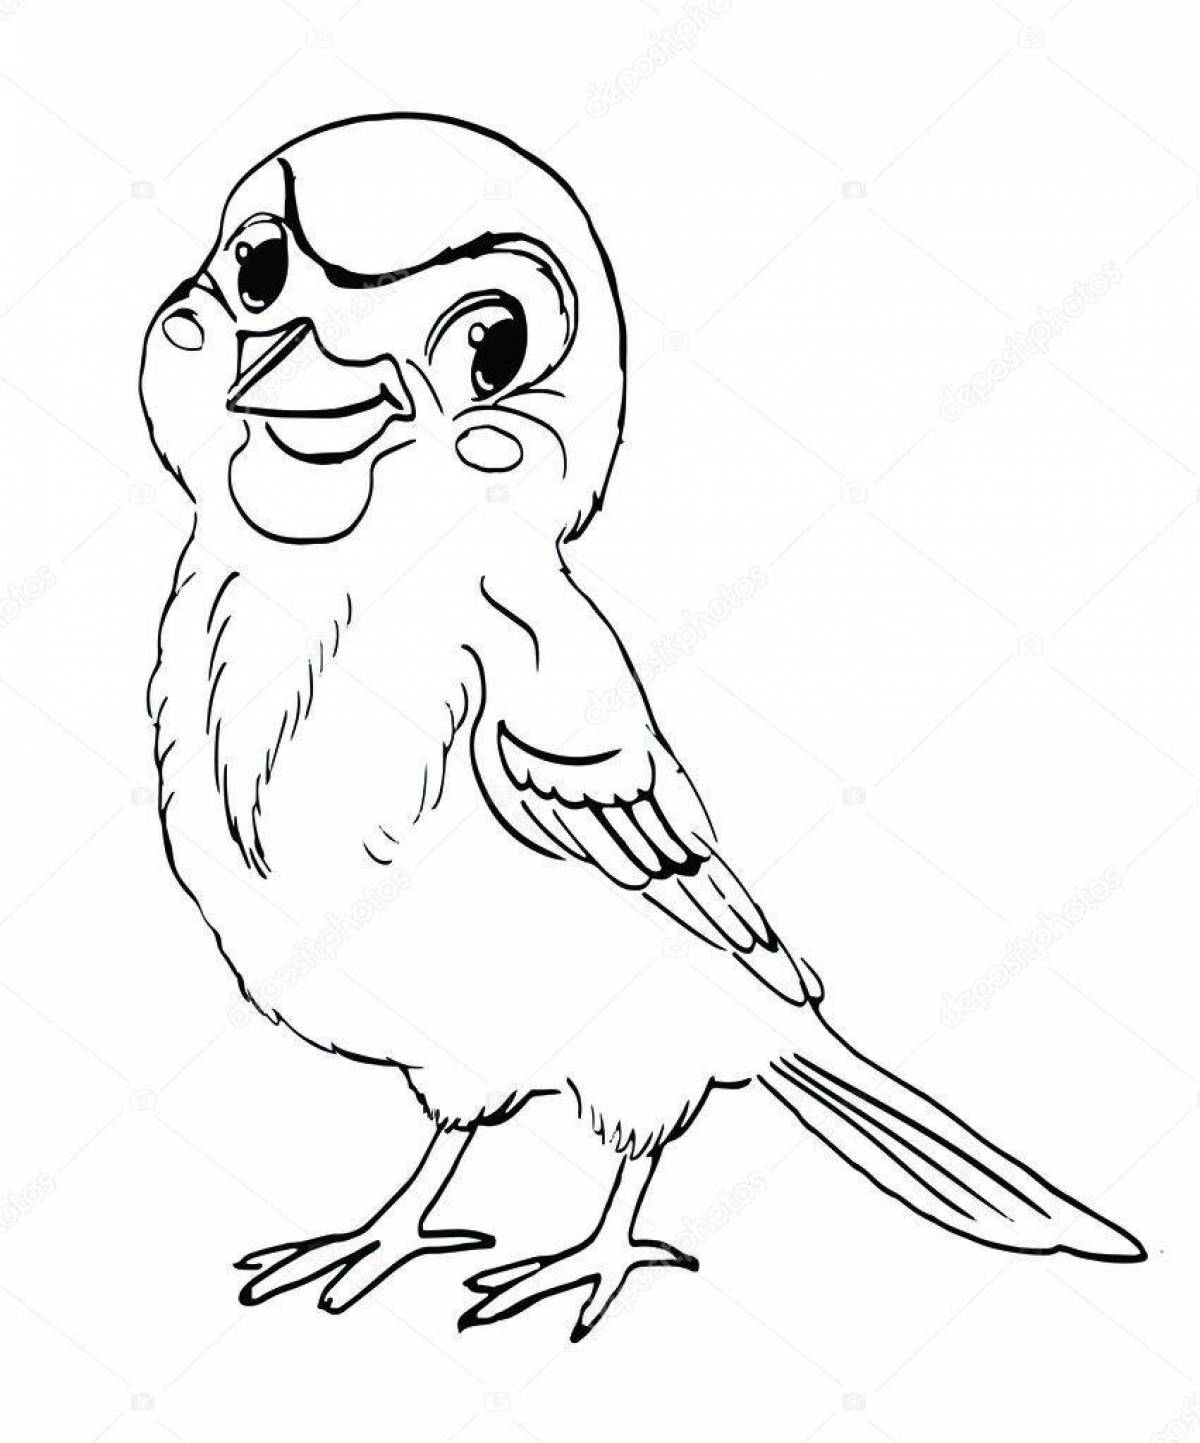 Jolly disheveled sparrow